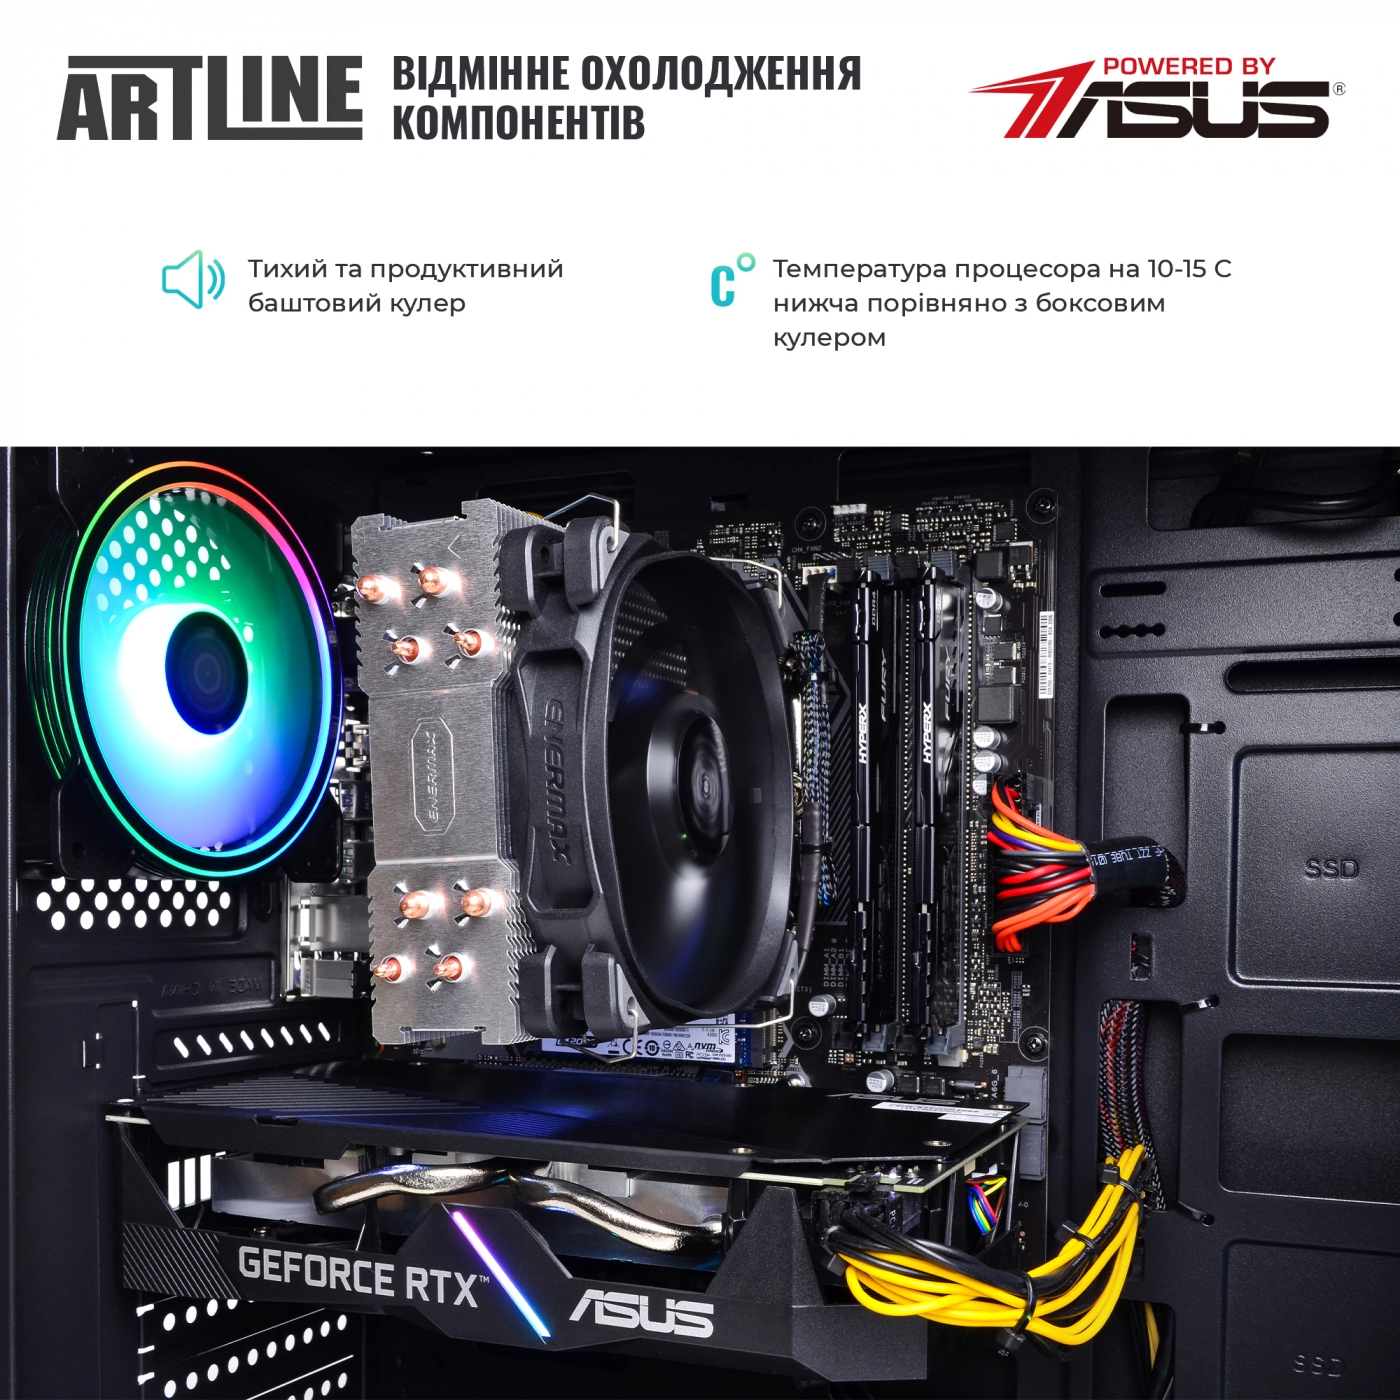 Купить Компьютер ARTLINE Gaming X59v31 - фото 8